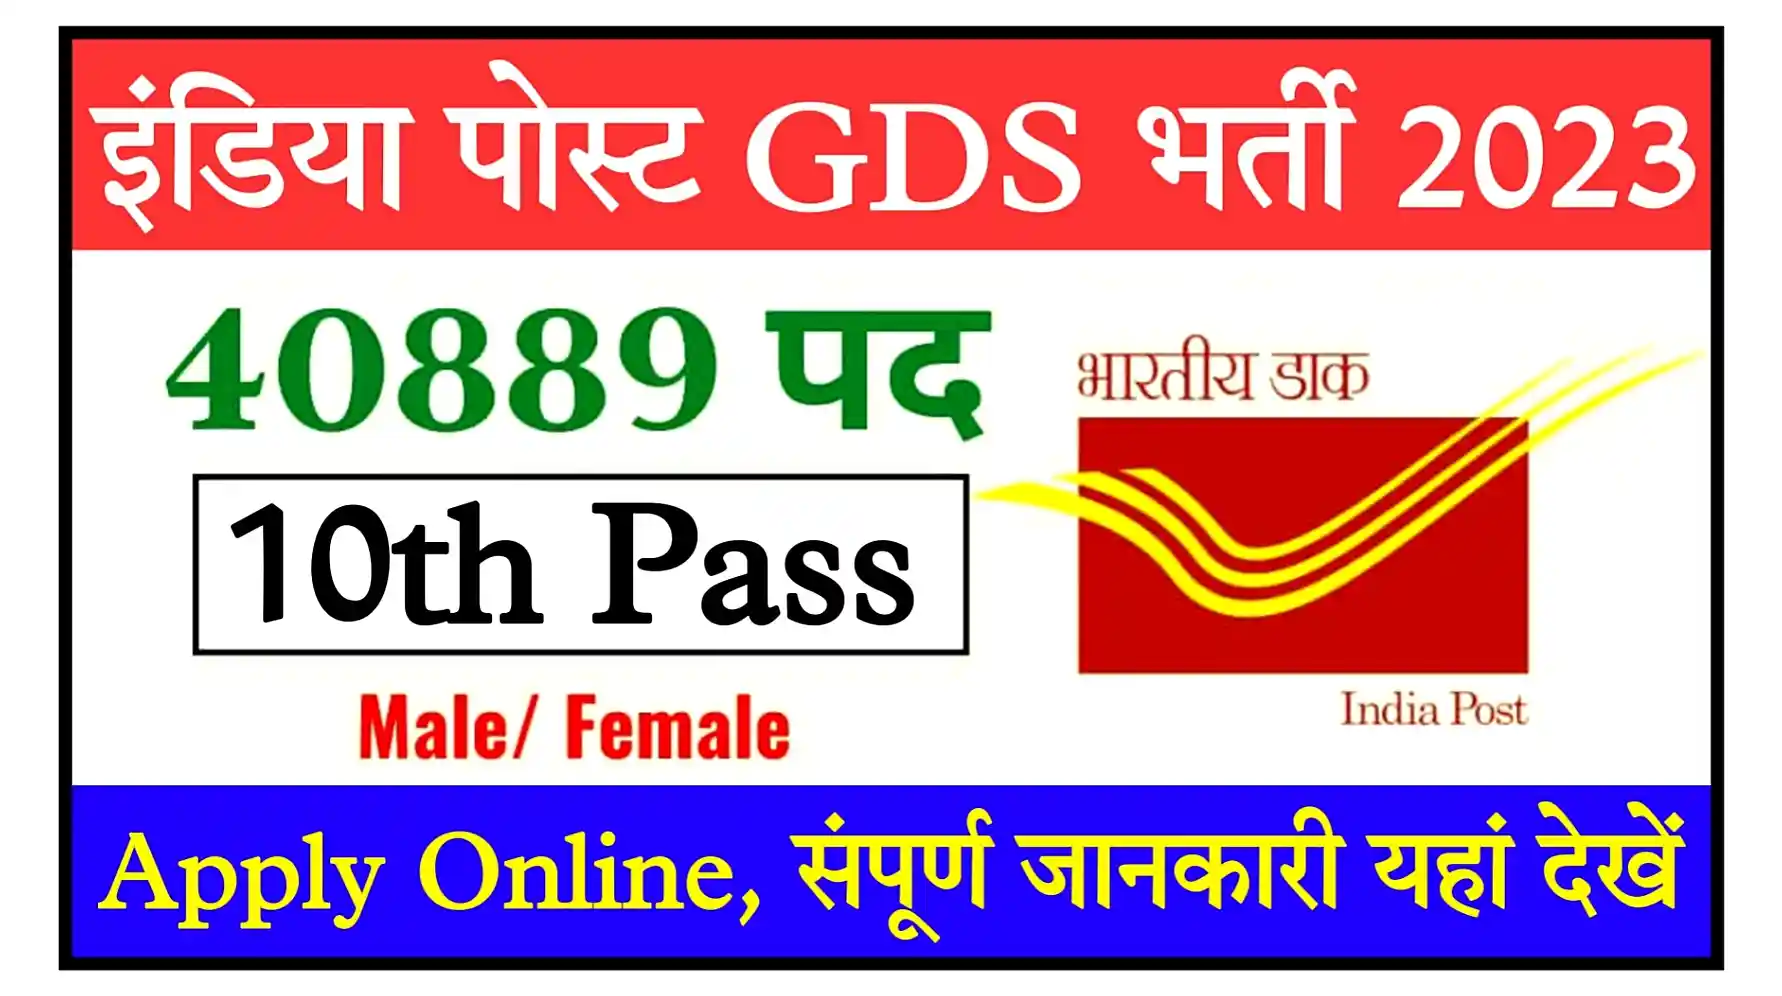 India Post GDS Recruitment 2023 Notification, Apply Online पोस्ट ऑफिस में 10वीं पास के लिए निकली 40889 पदों पर भर्ती